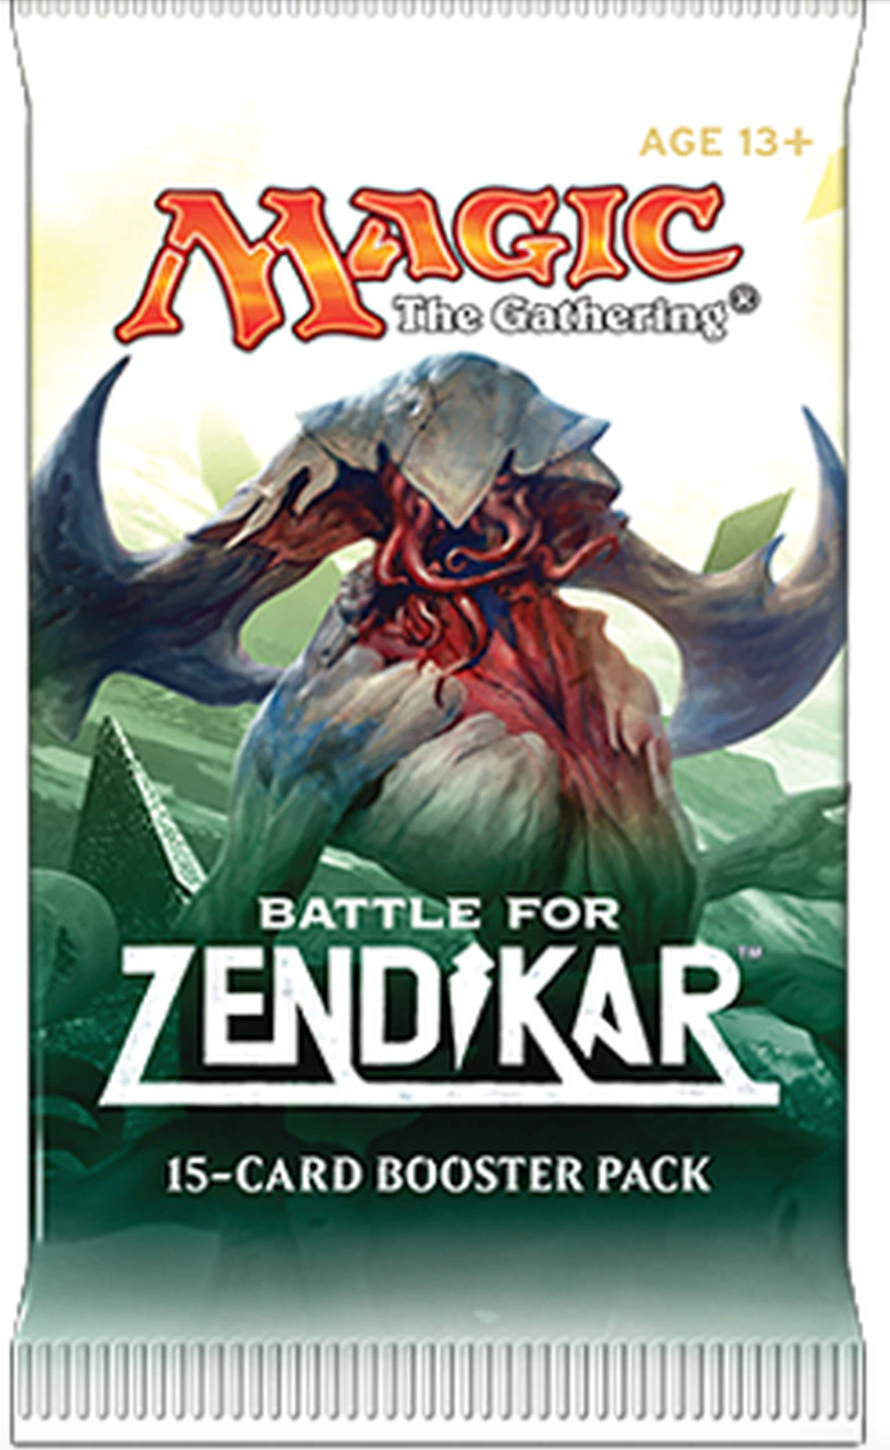 Battle for Zendikar: Booster Pack